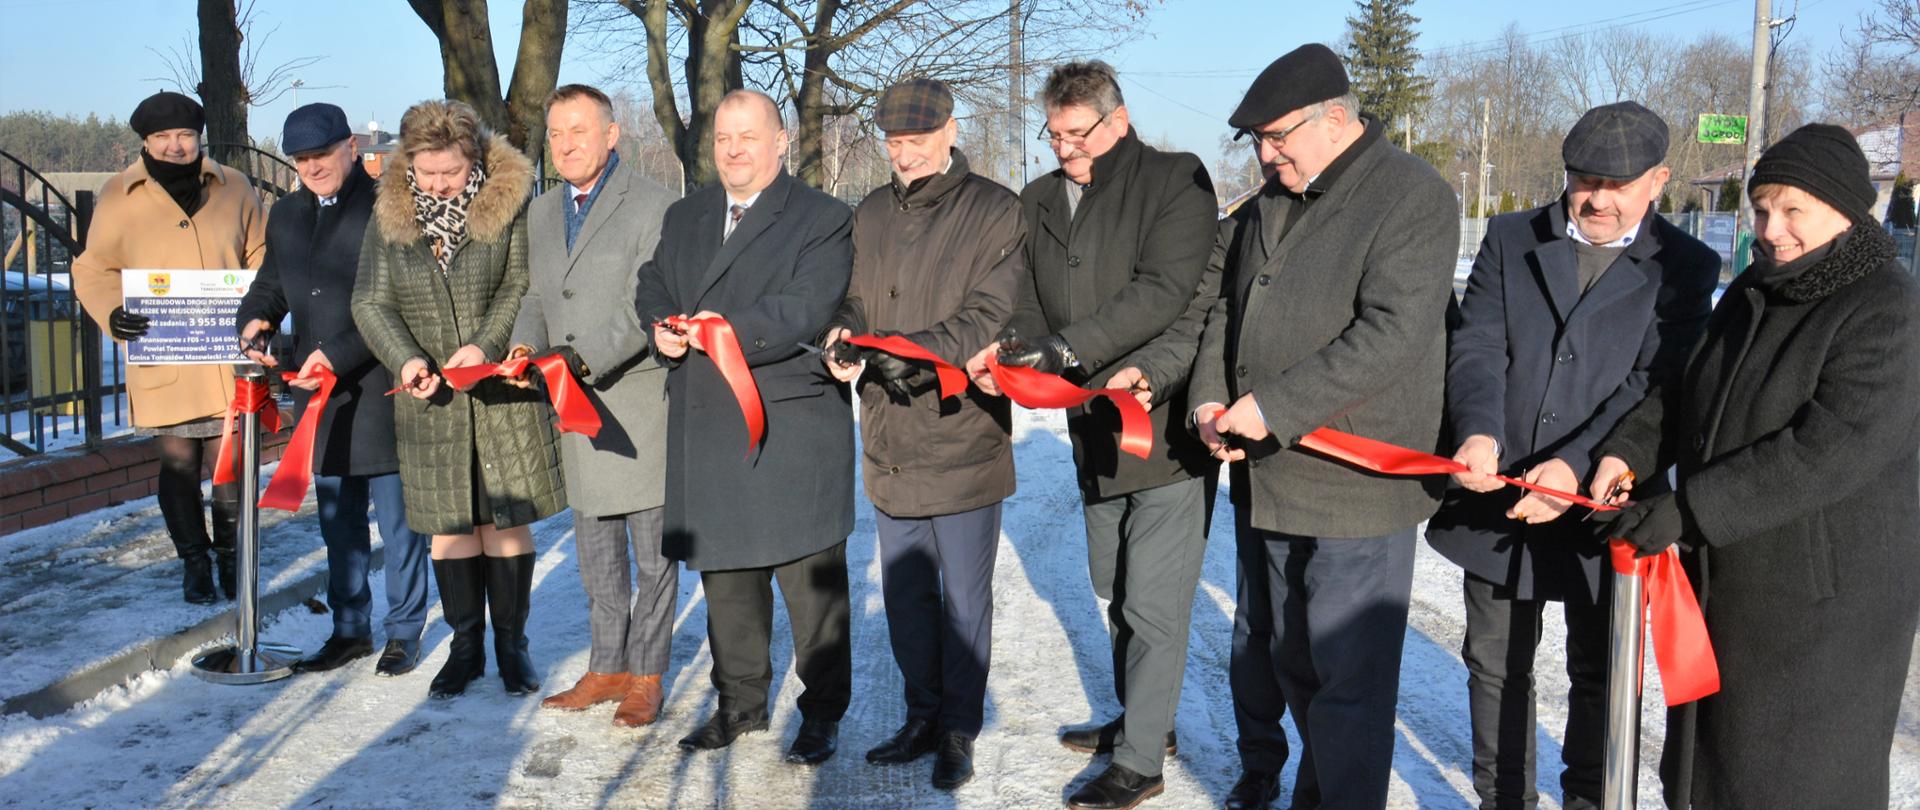 Oficjalne przecięcie wstęgi symbolizujące otwarcie przebudowanej drogi w Smardzewicach 